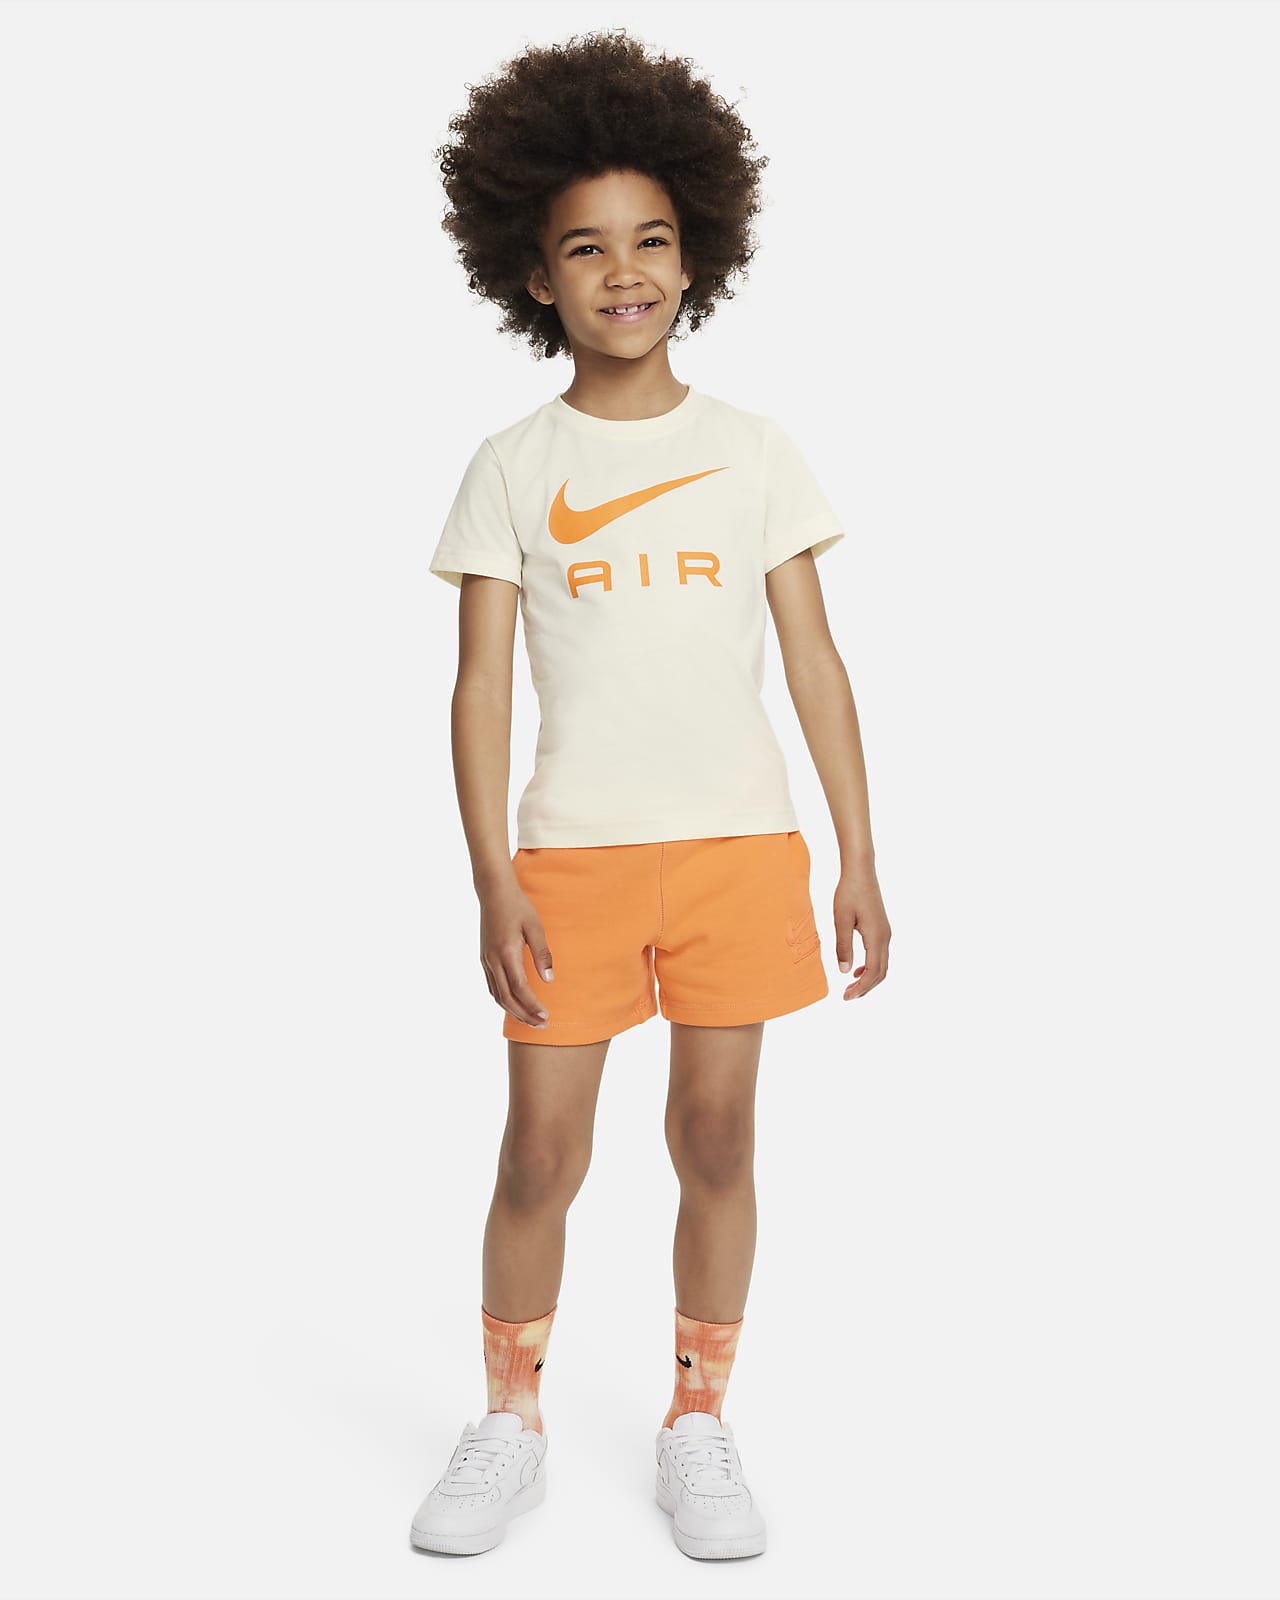 Moedig het doel in verlegenheid gebracht Nike Sportswear Air Shorts Set Set für jüngere Kinder. Nike DE